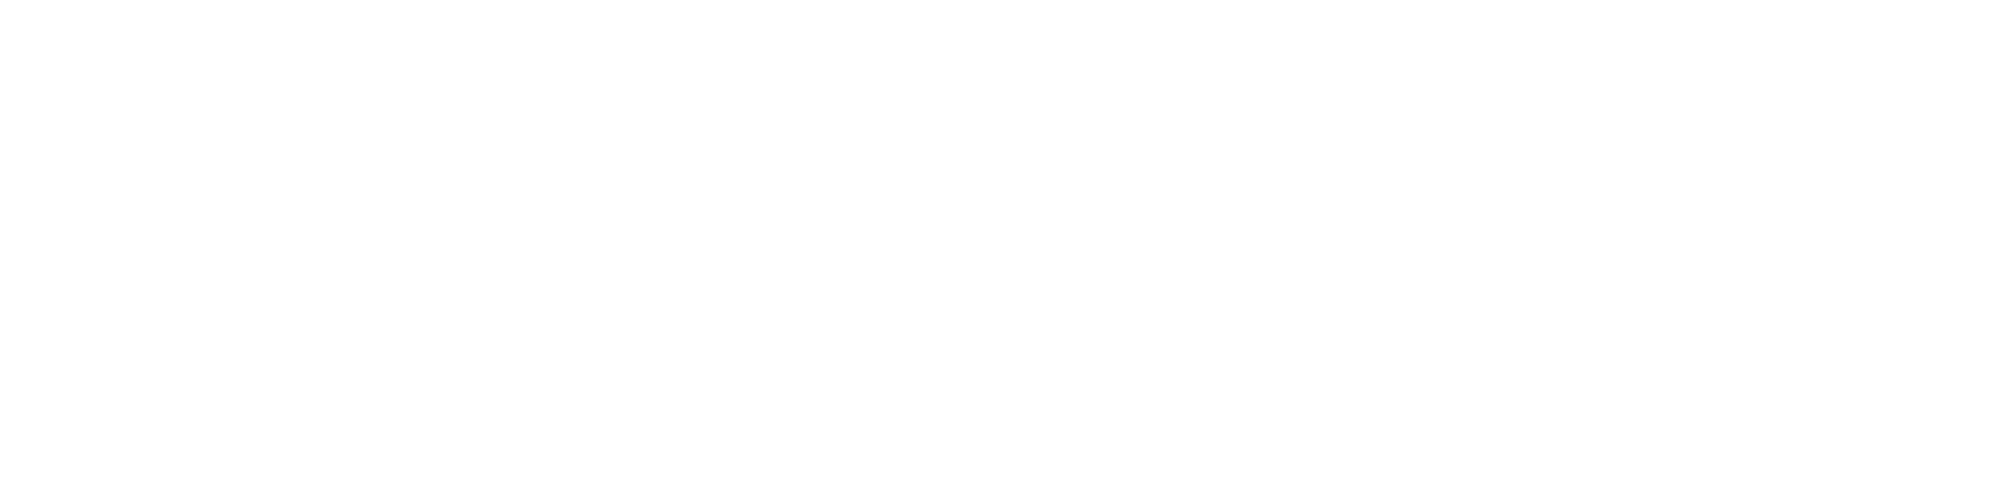 Infinity Mattress Machinery